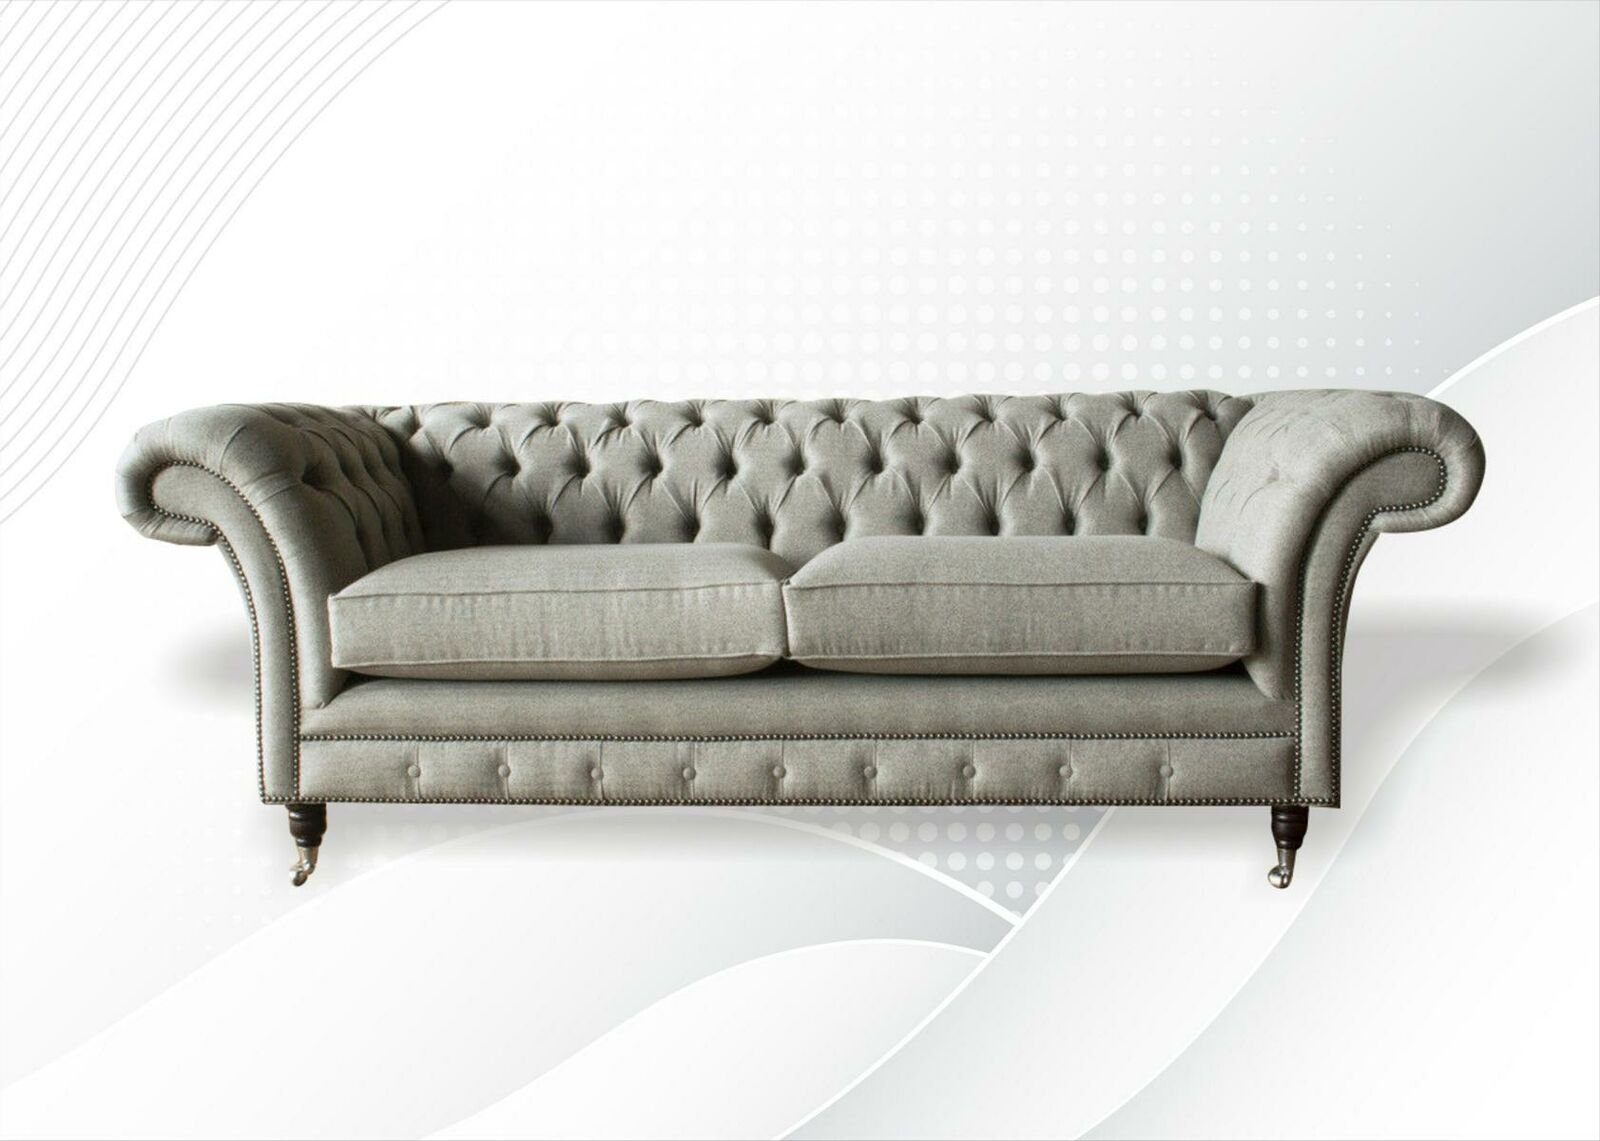 JVmoebel Chesterfield-Sofa, Chesterfield Beige Sofa Stoff Wohnzimmer Design Couchen Polster Sofas Neu Textil